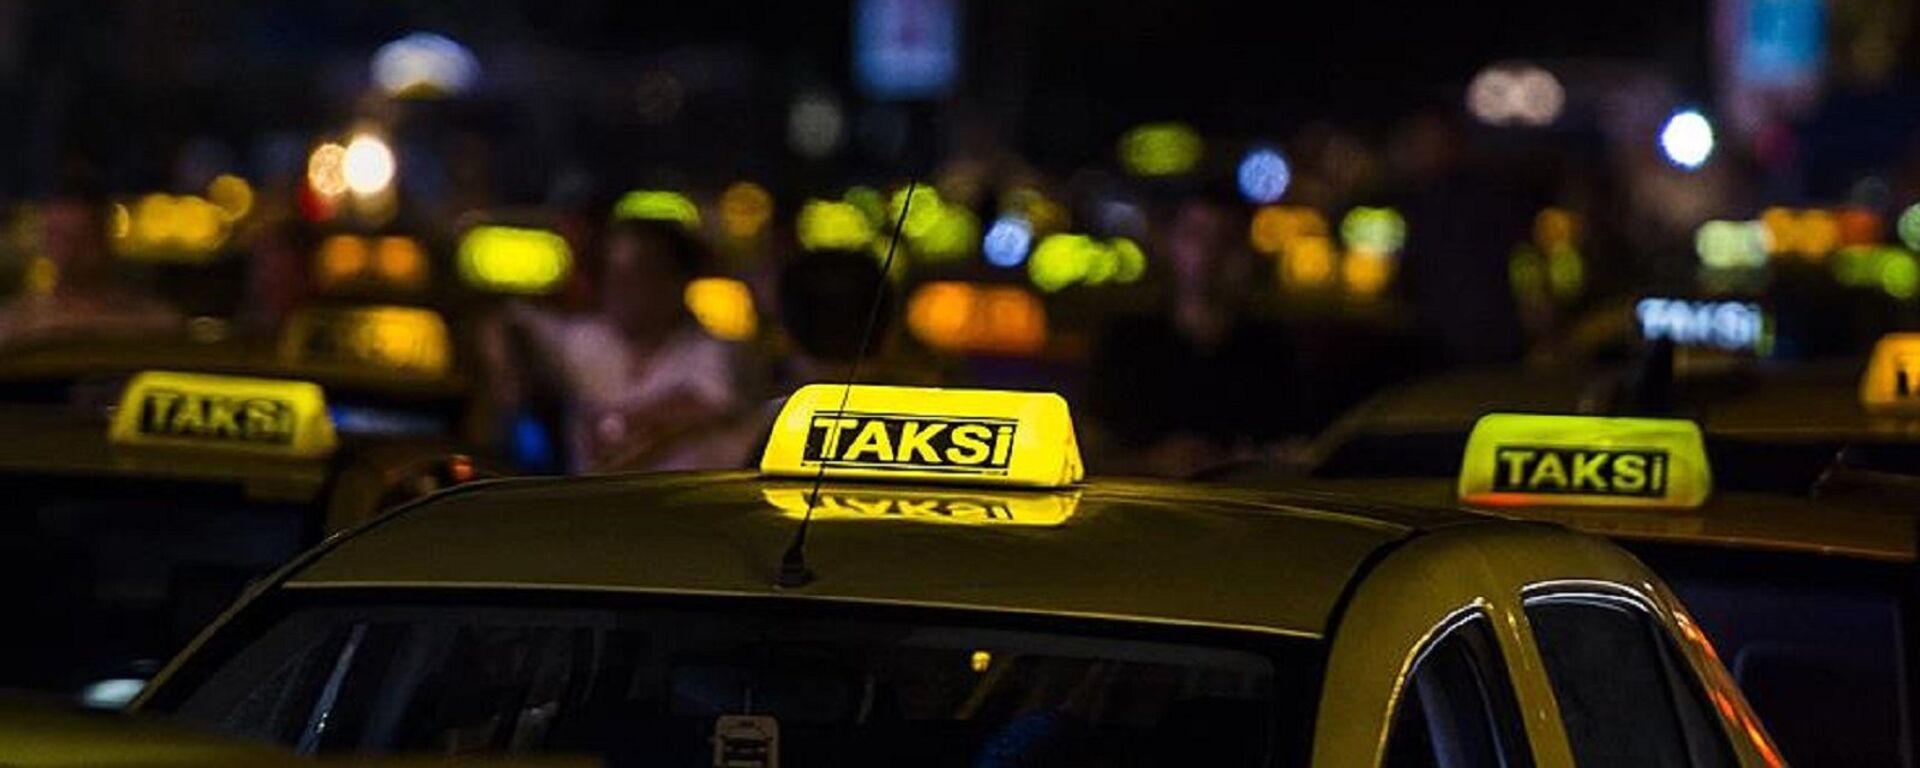 Taksi - Sputnik Türkiye, 1920, 07.03.2018